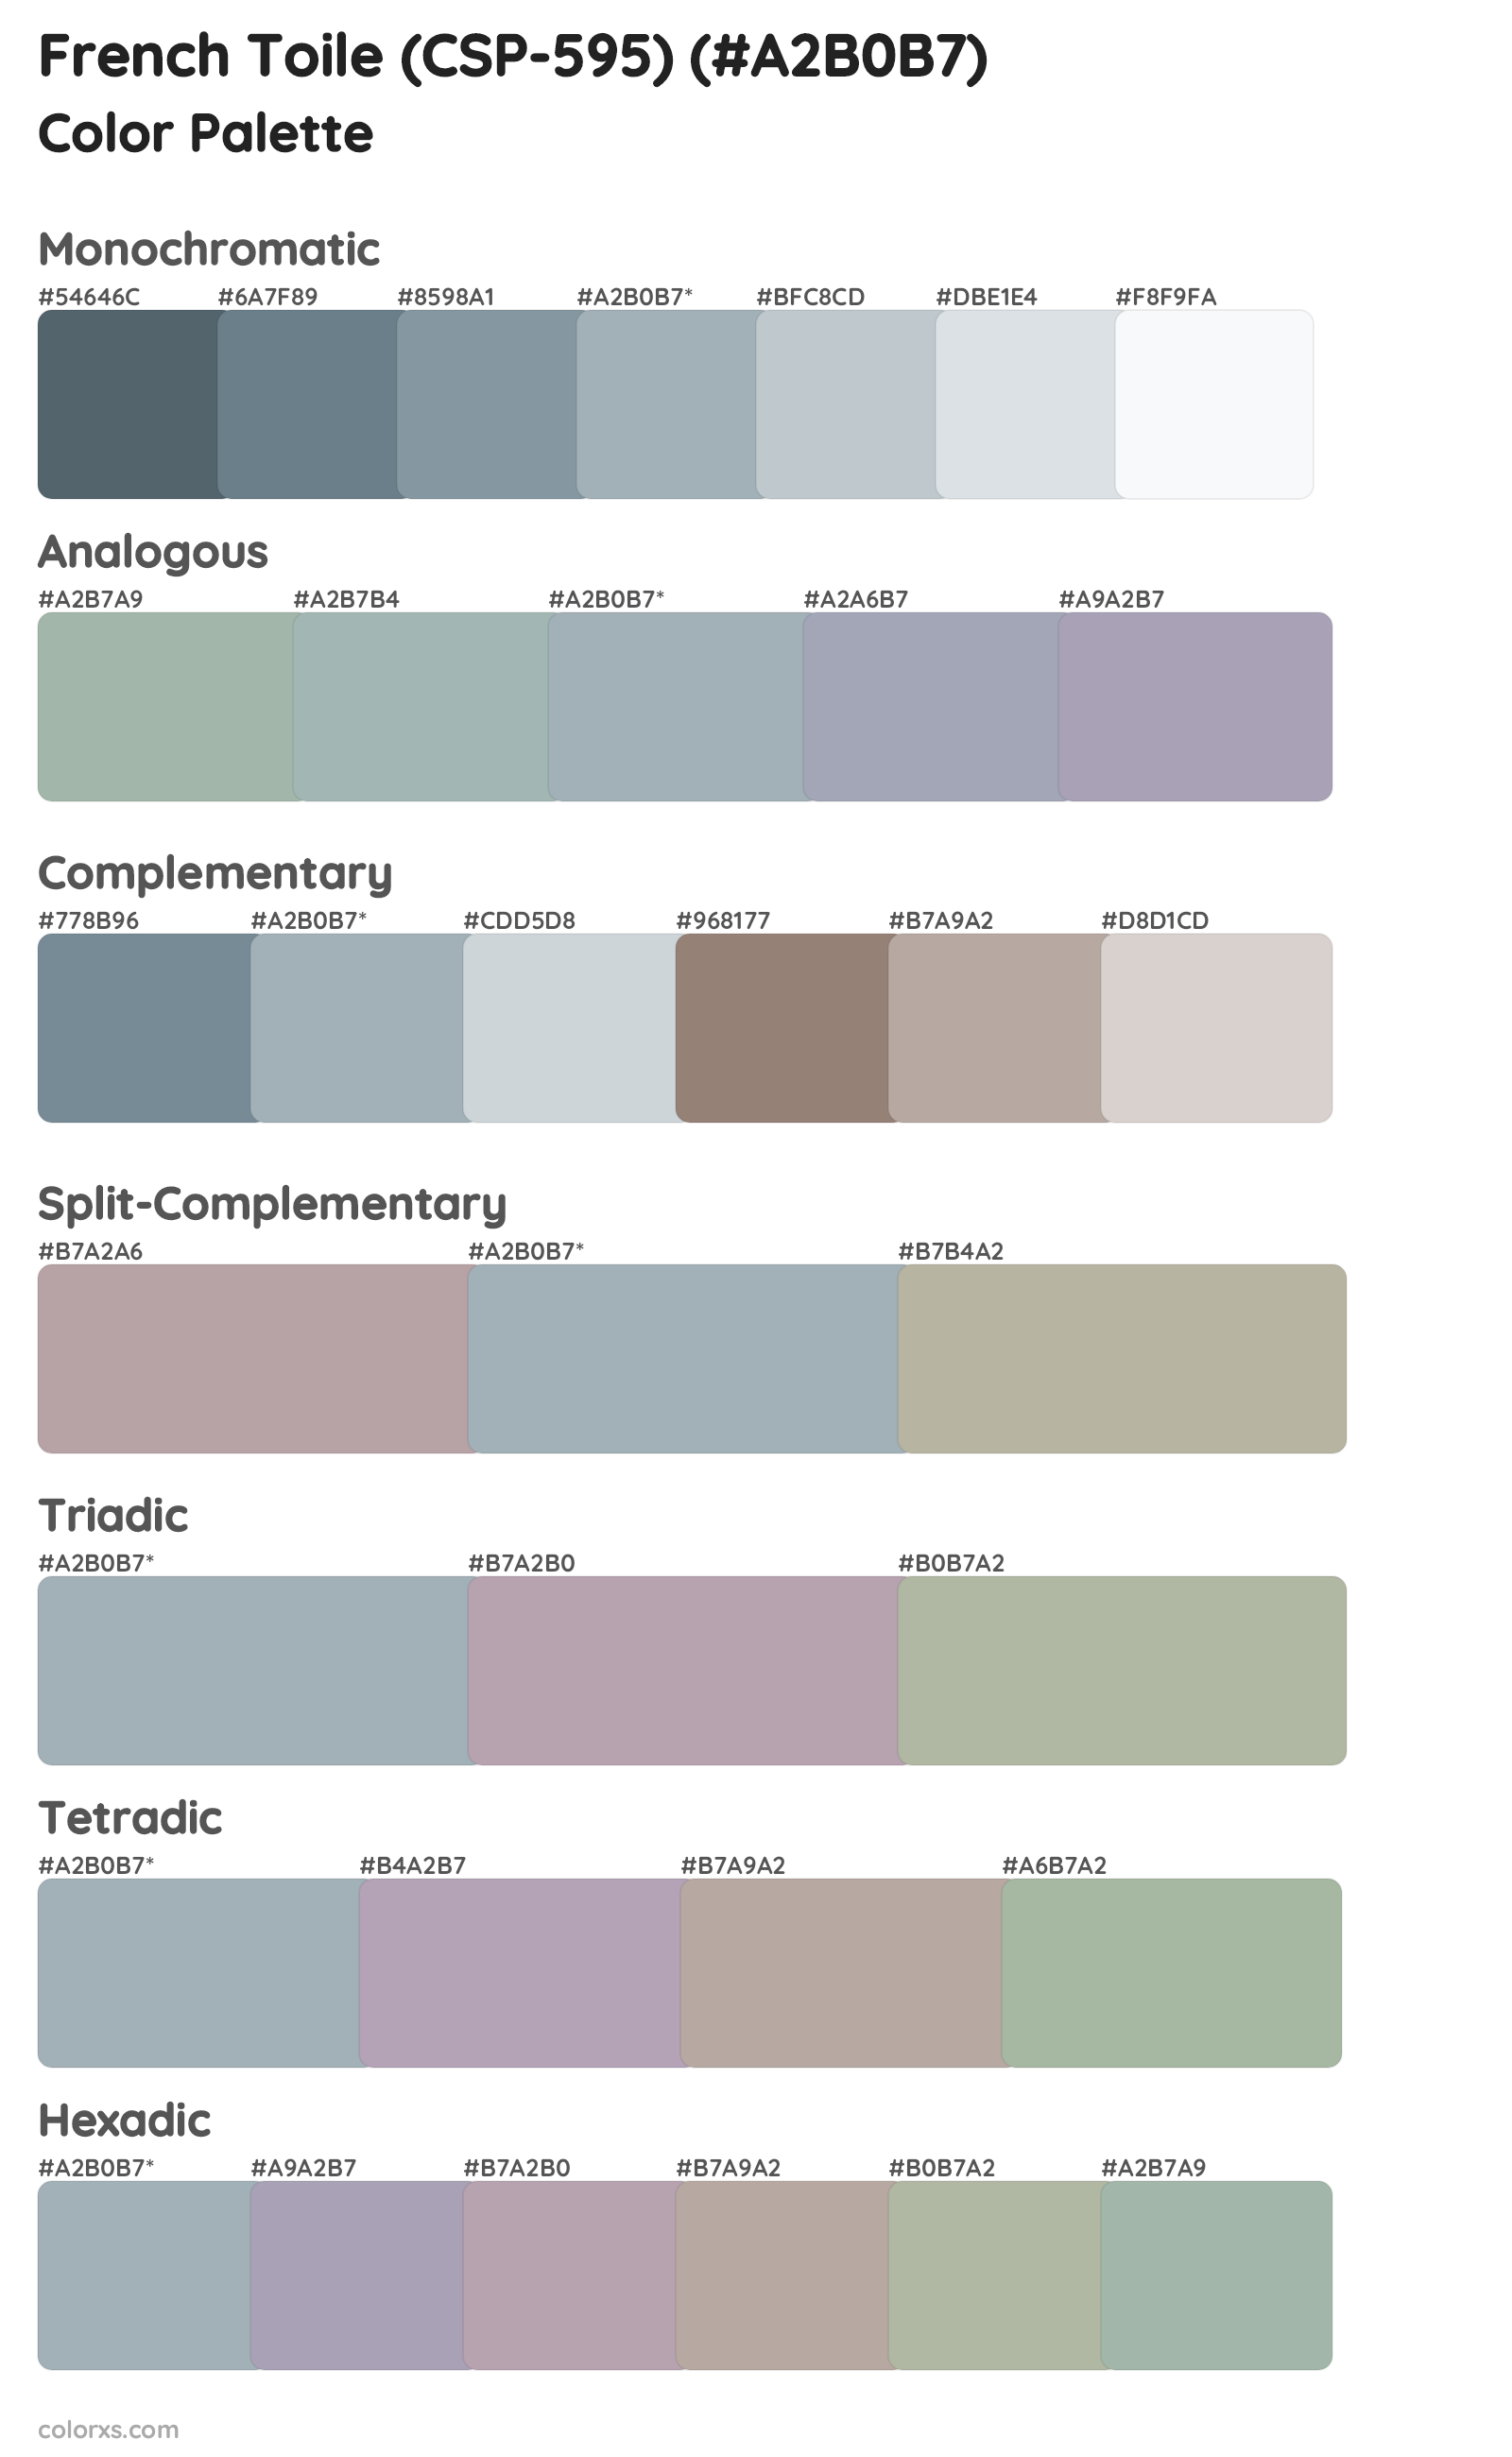 French Toile (CSP-595) Color Scheme Palettes